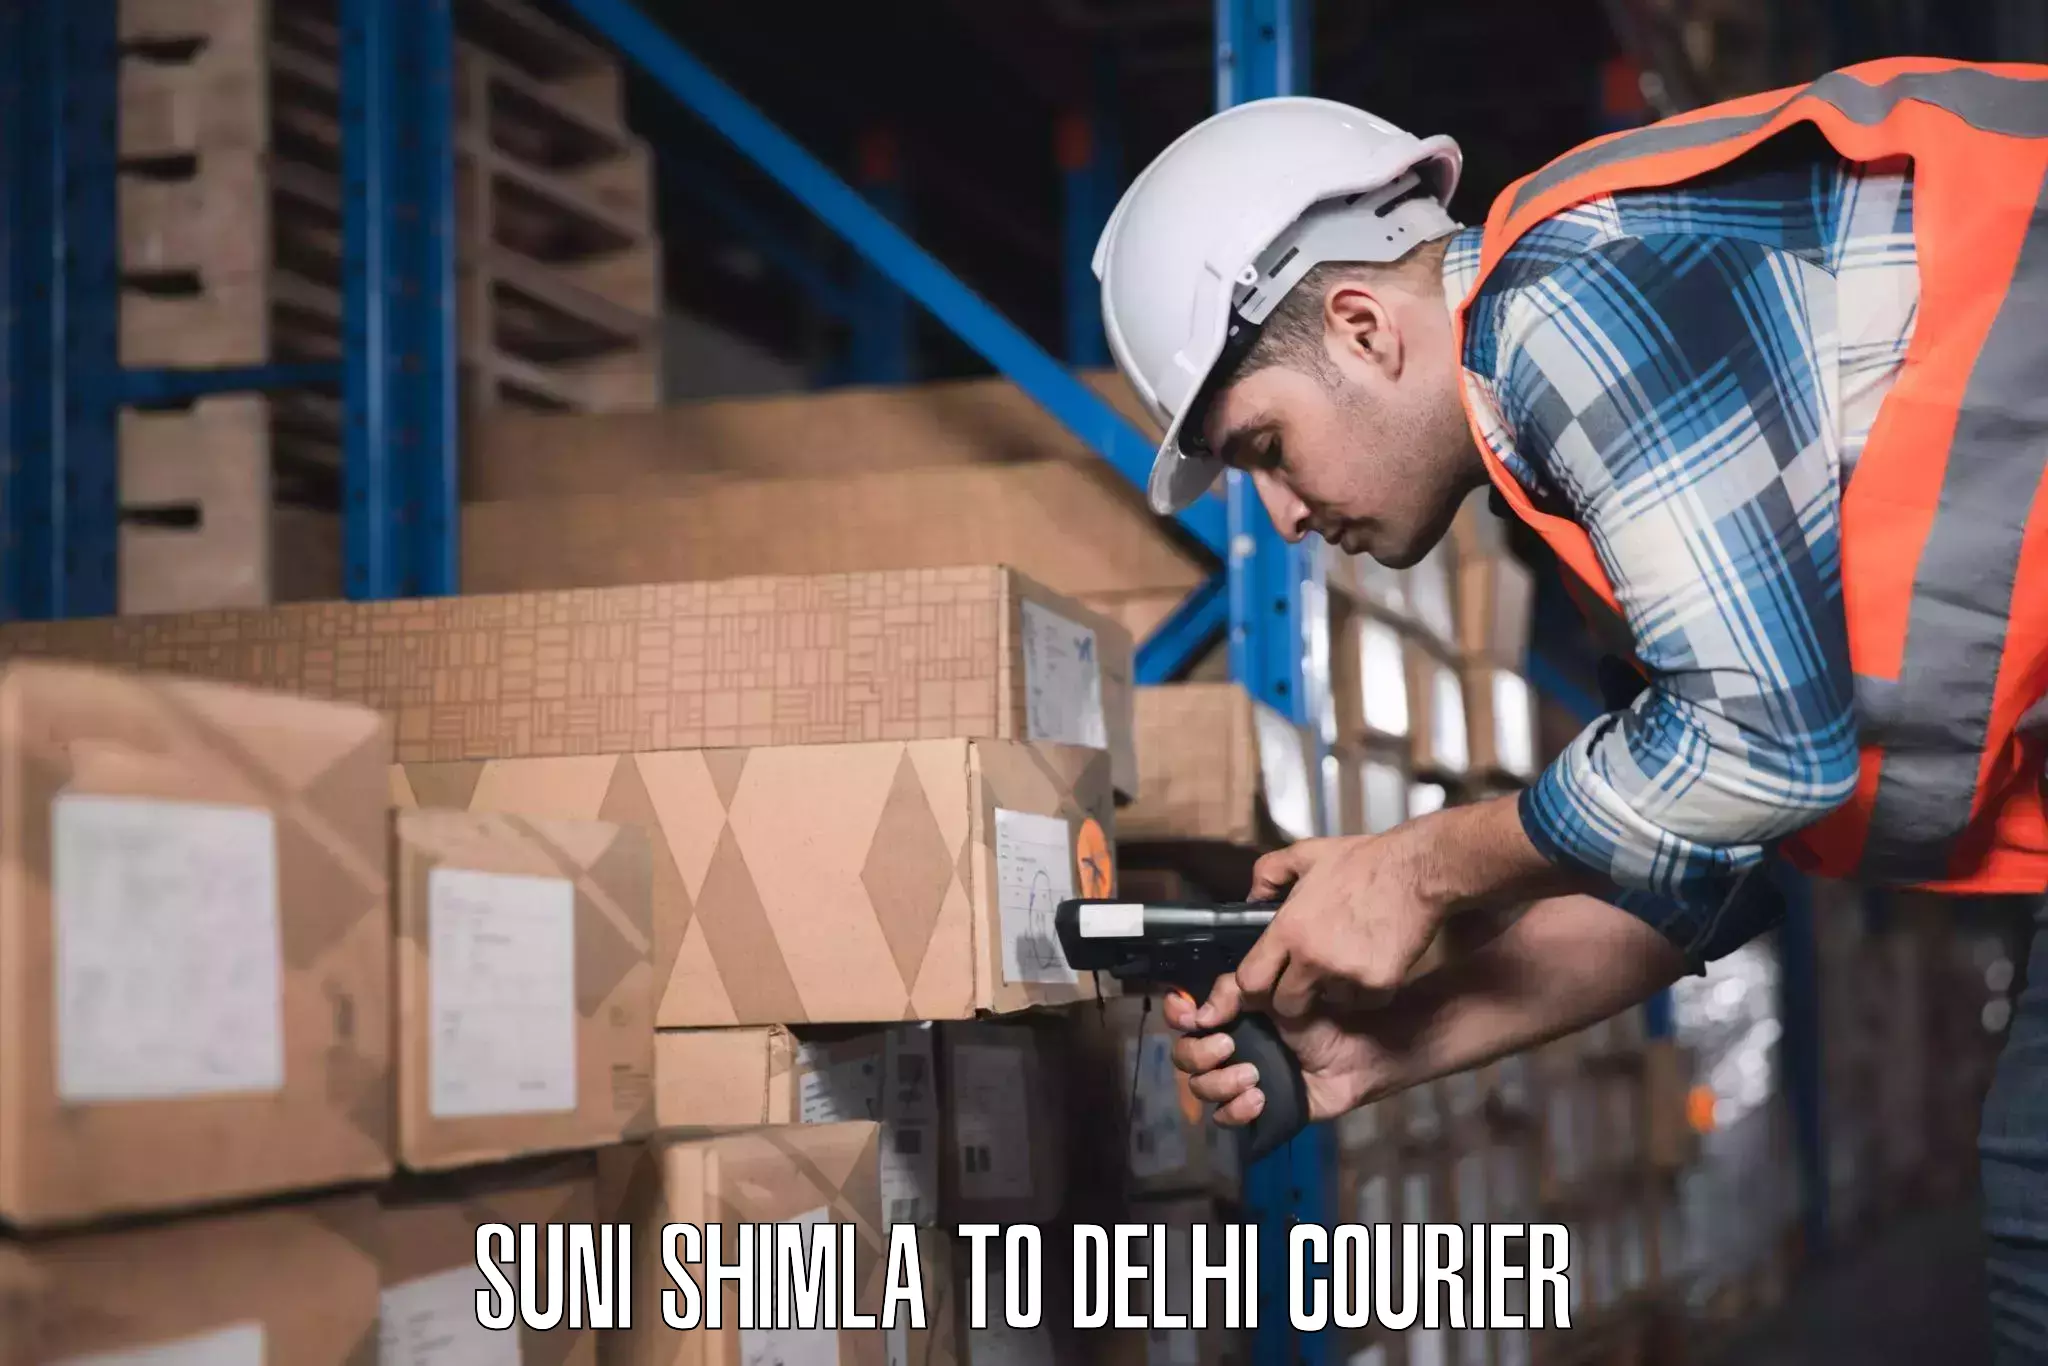 Luggage delivery system Suni Shimla to Jawaharlal Nehru University New Delhi